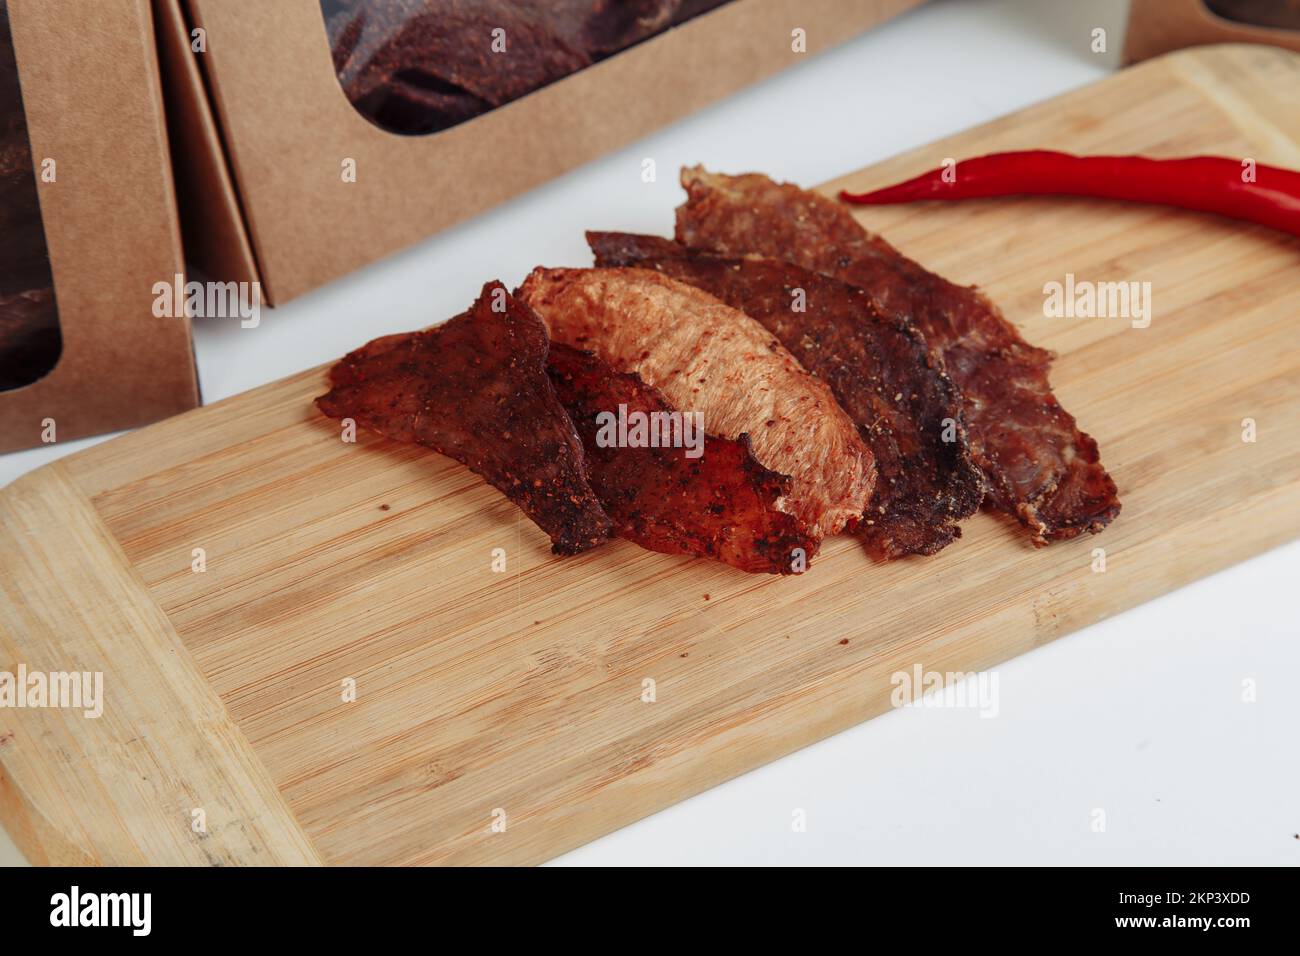 Tranches rares de steak à trois pointes sur une planche à découper en bambou. Photo de haute qualité Banque D'Images